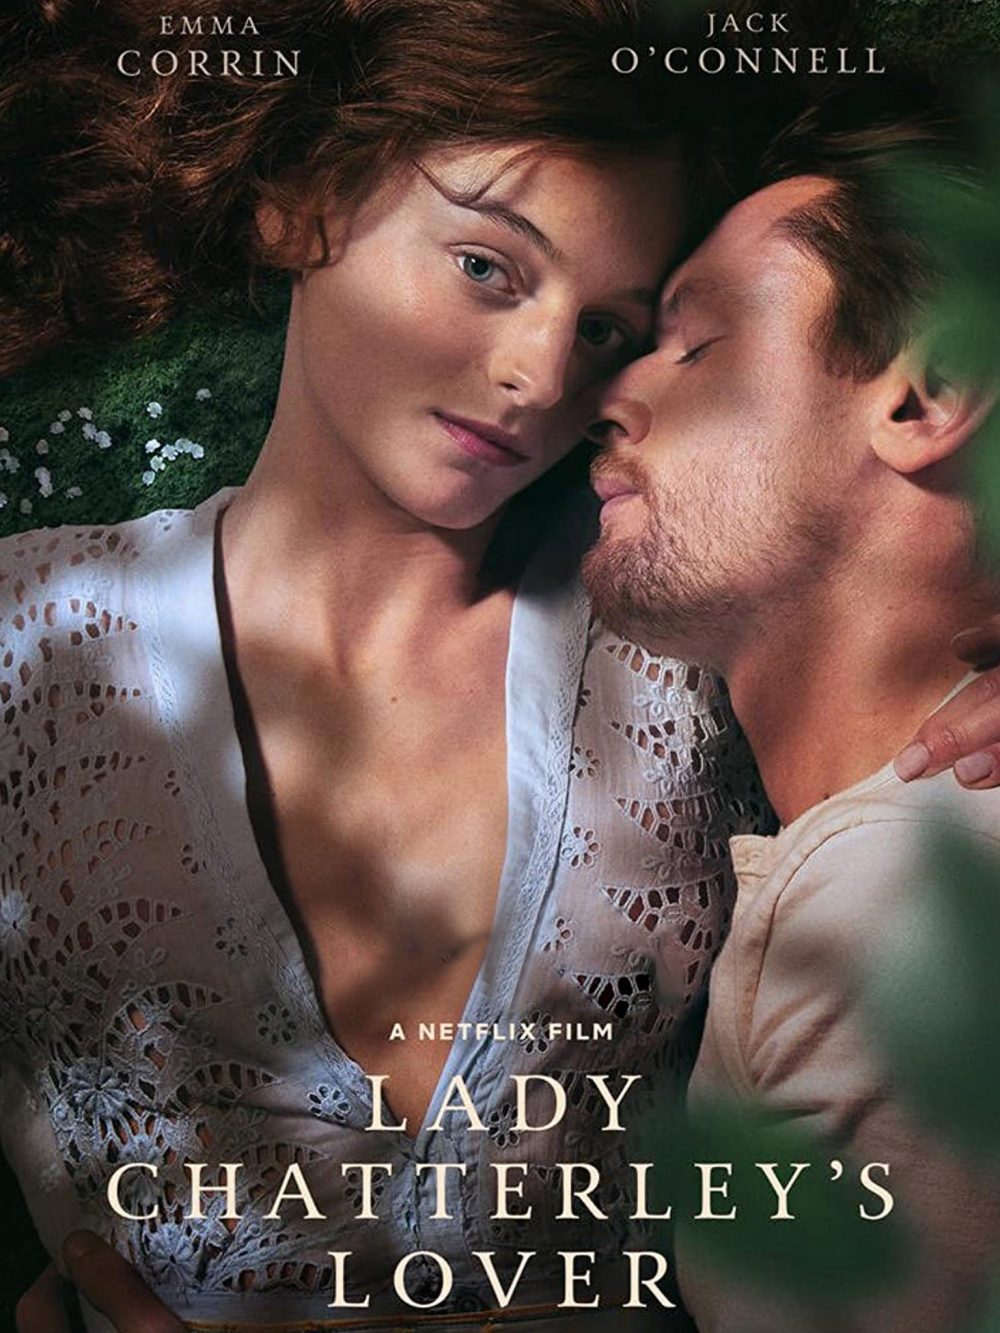 Phim tình cảm mạnh 18+: Người tình của phu nhân Chatterley - Lady Chatterleys Lover (2022)